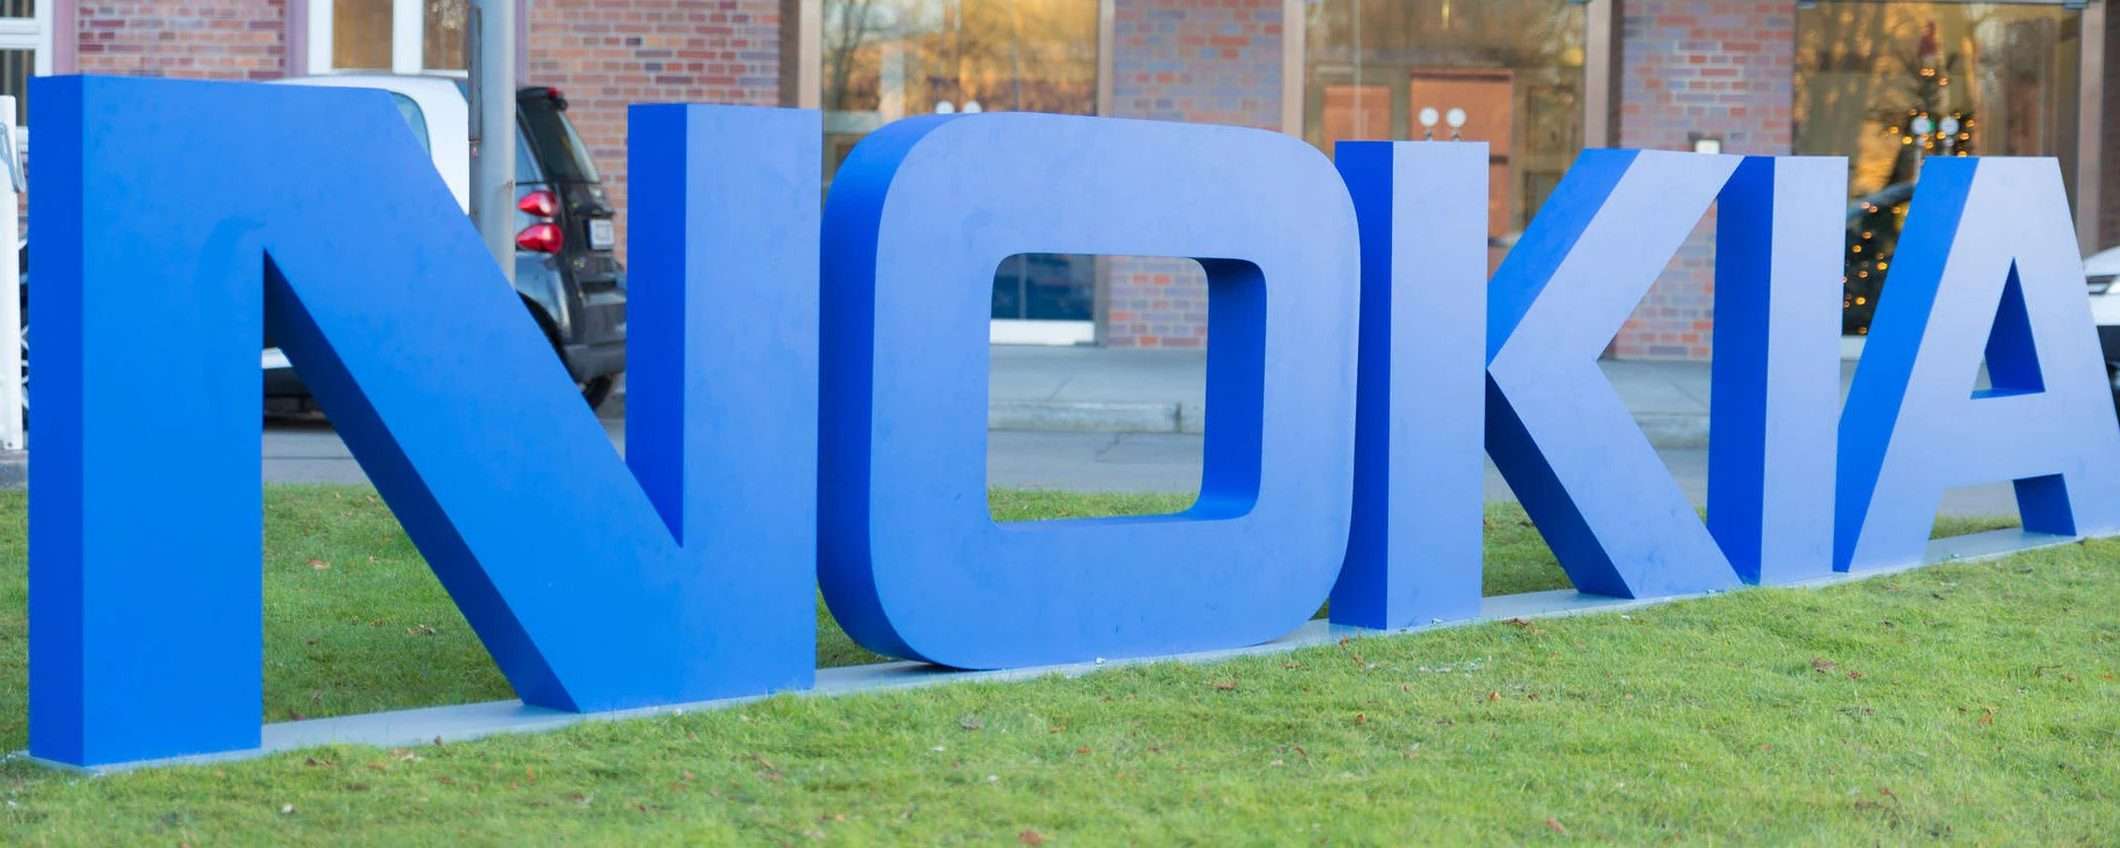 SORM: sorveglianza russa con l'aiuto di Nokia? (update)